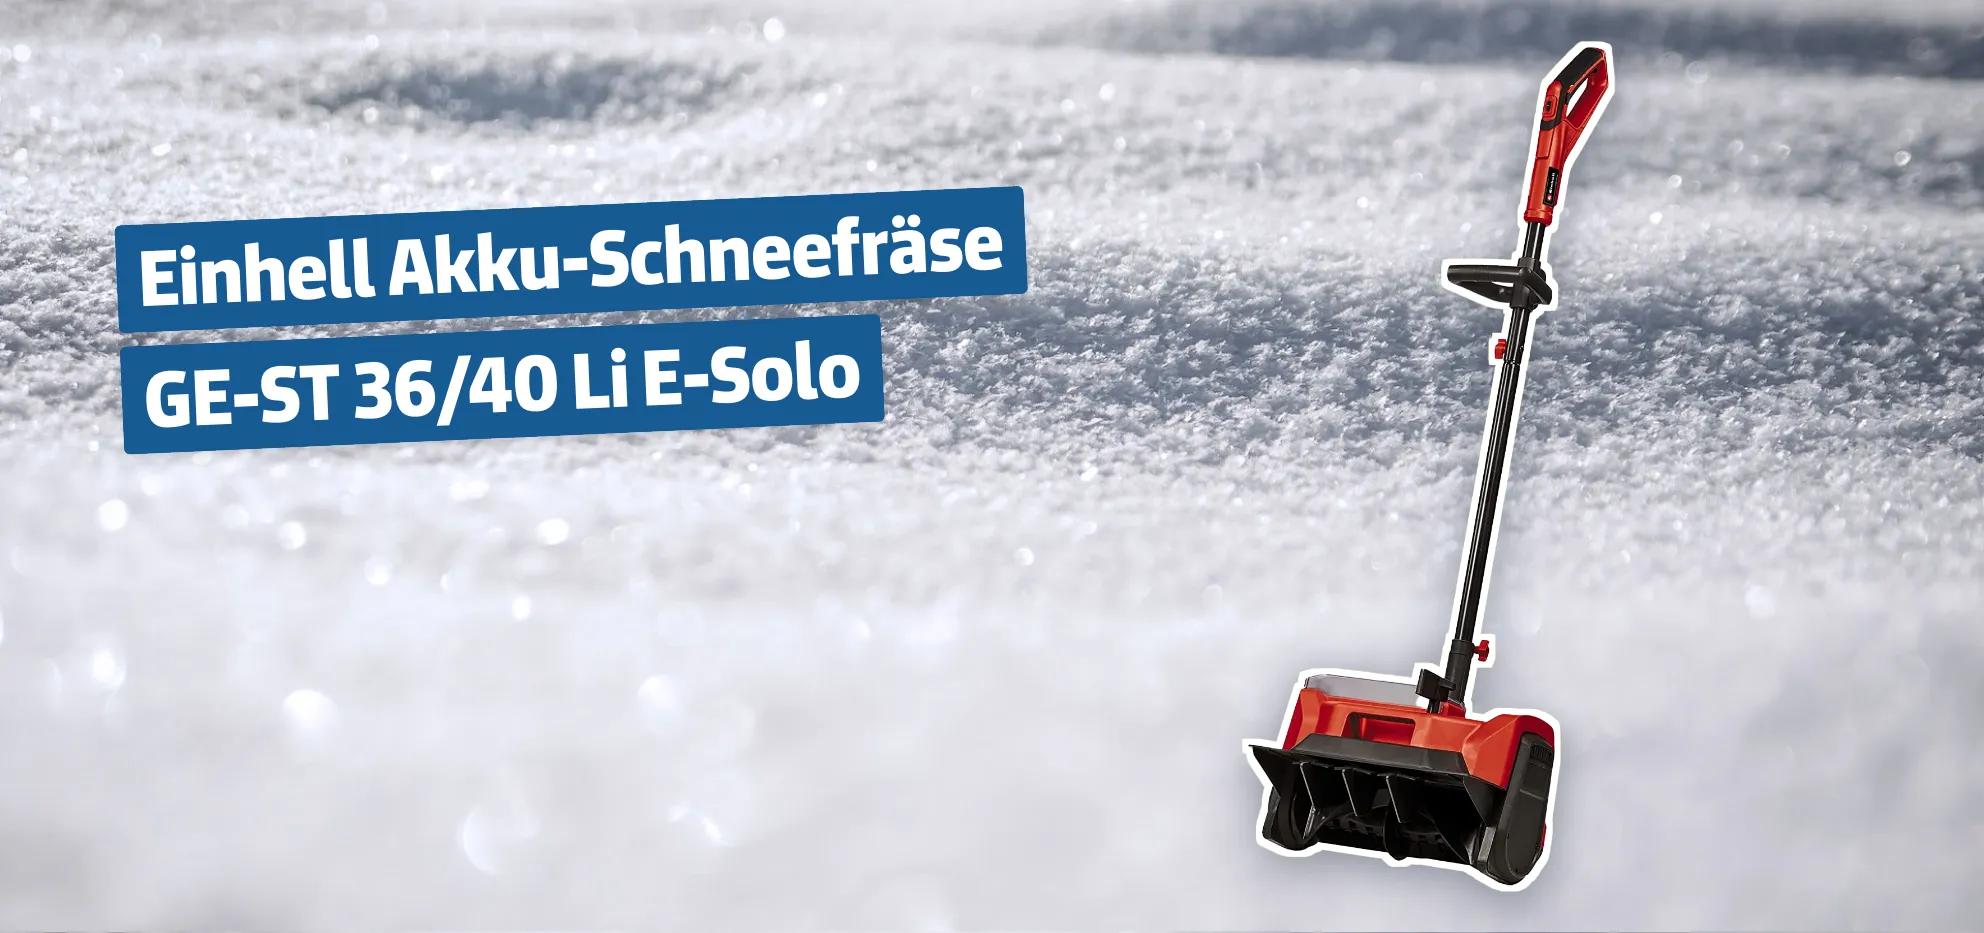 PRAXISTEST Einhell Akku Schneefräse powerXchange GE-ST 36/40Li  #einhellharry 